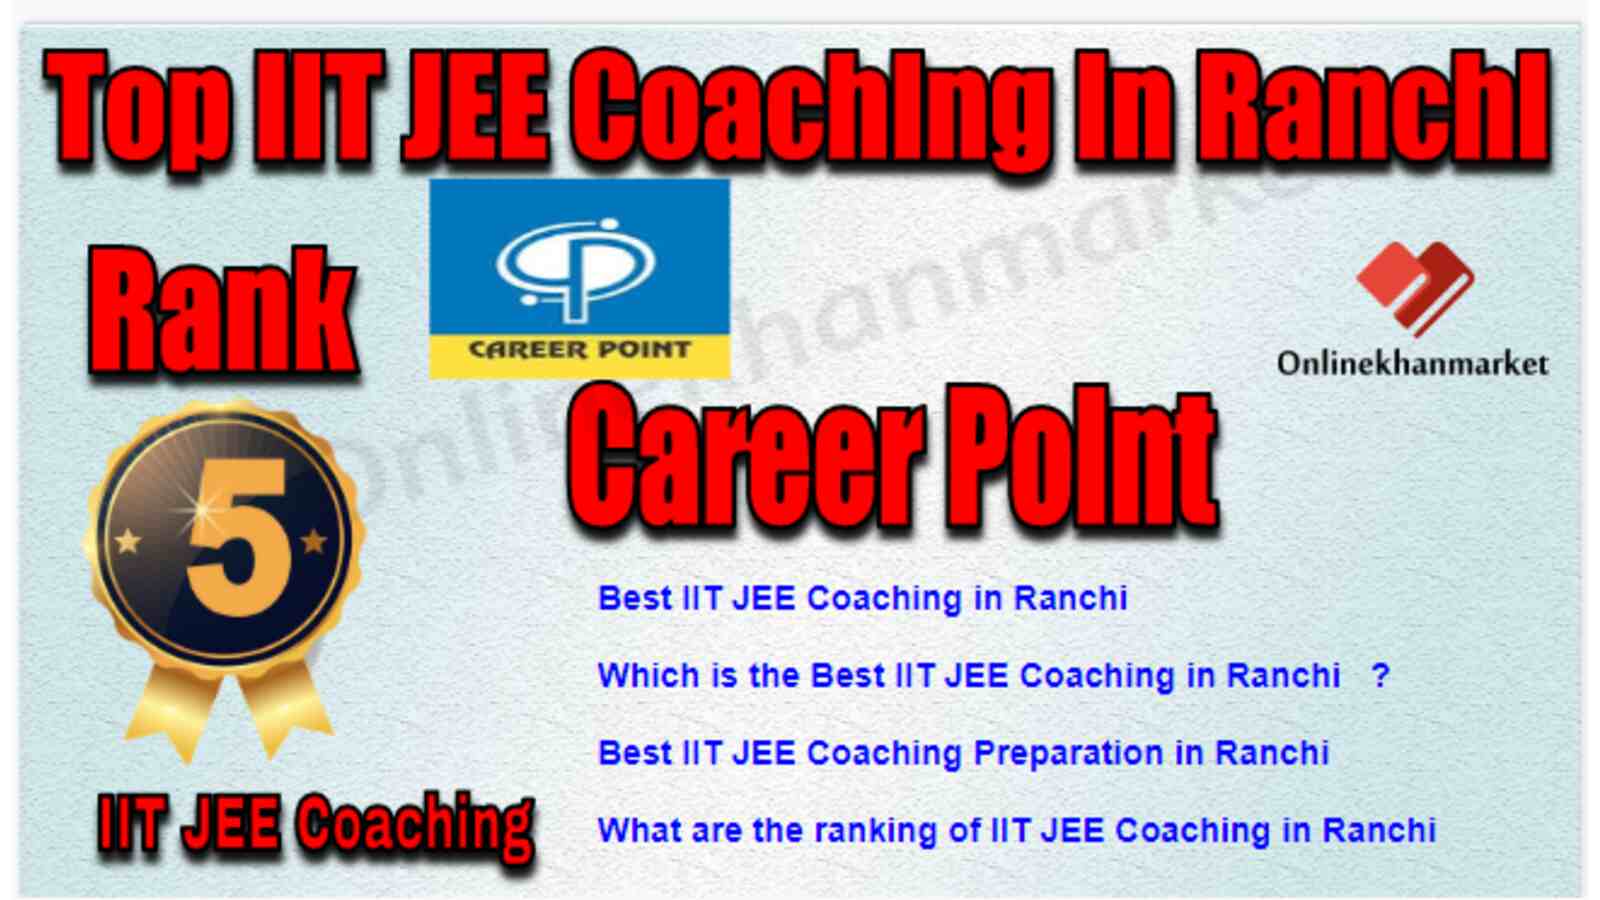 Rank 5 Best IIT JEE Coaching in Ranchi